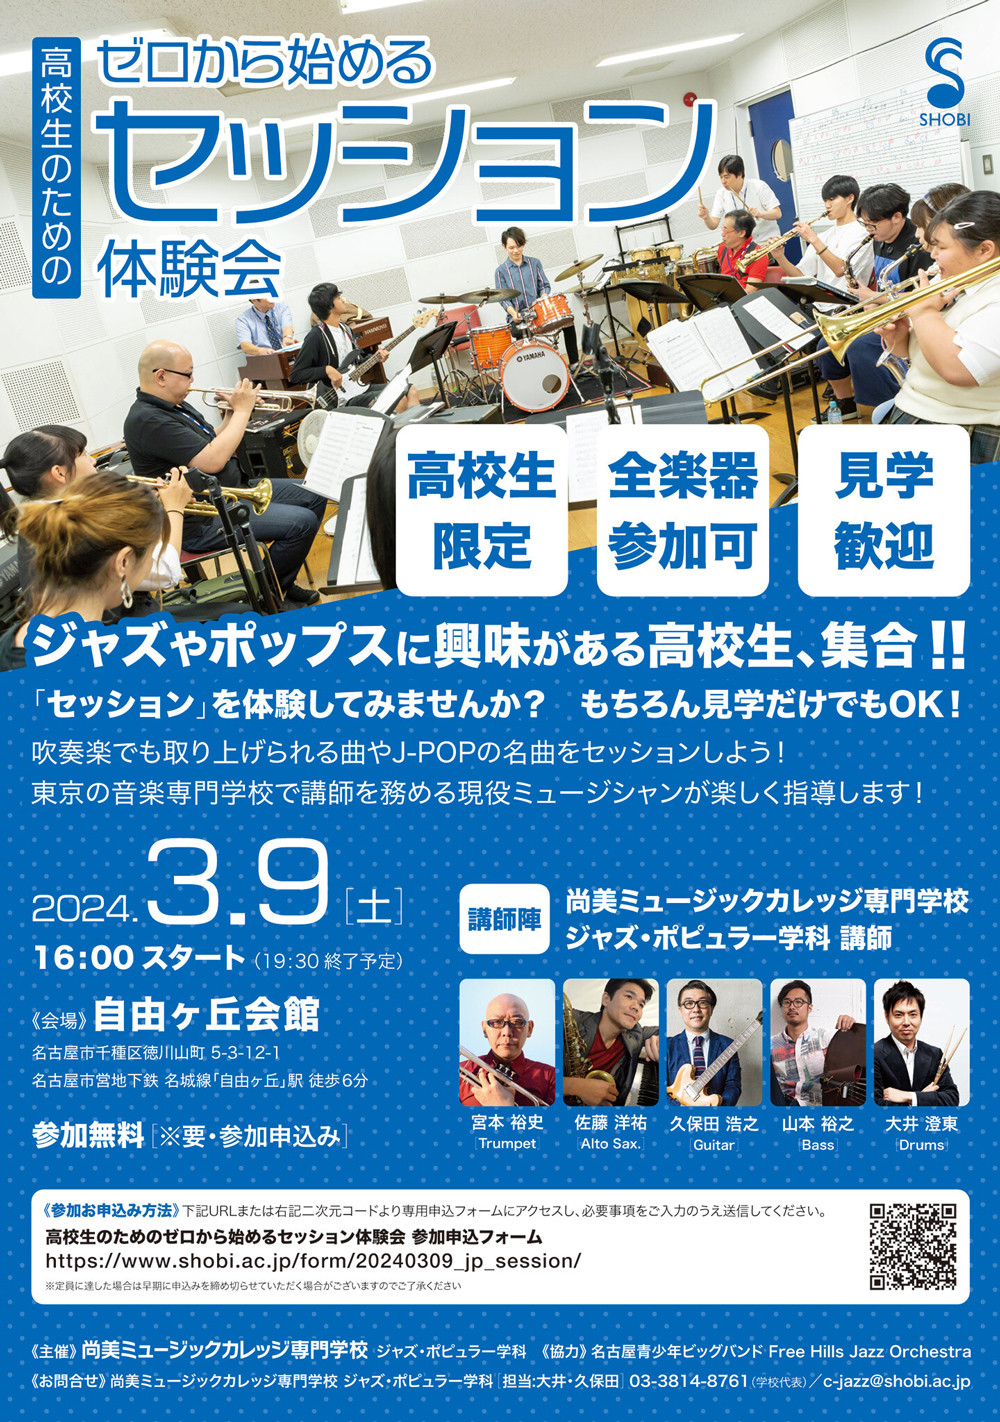 https://www.shobi.ac.jp/event/20240309_jp_nagoya-session.jpg